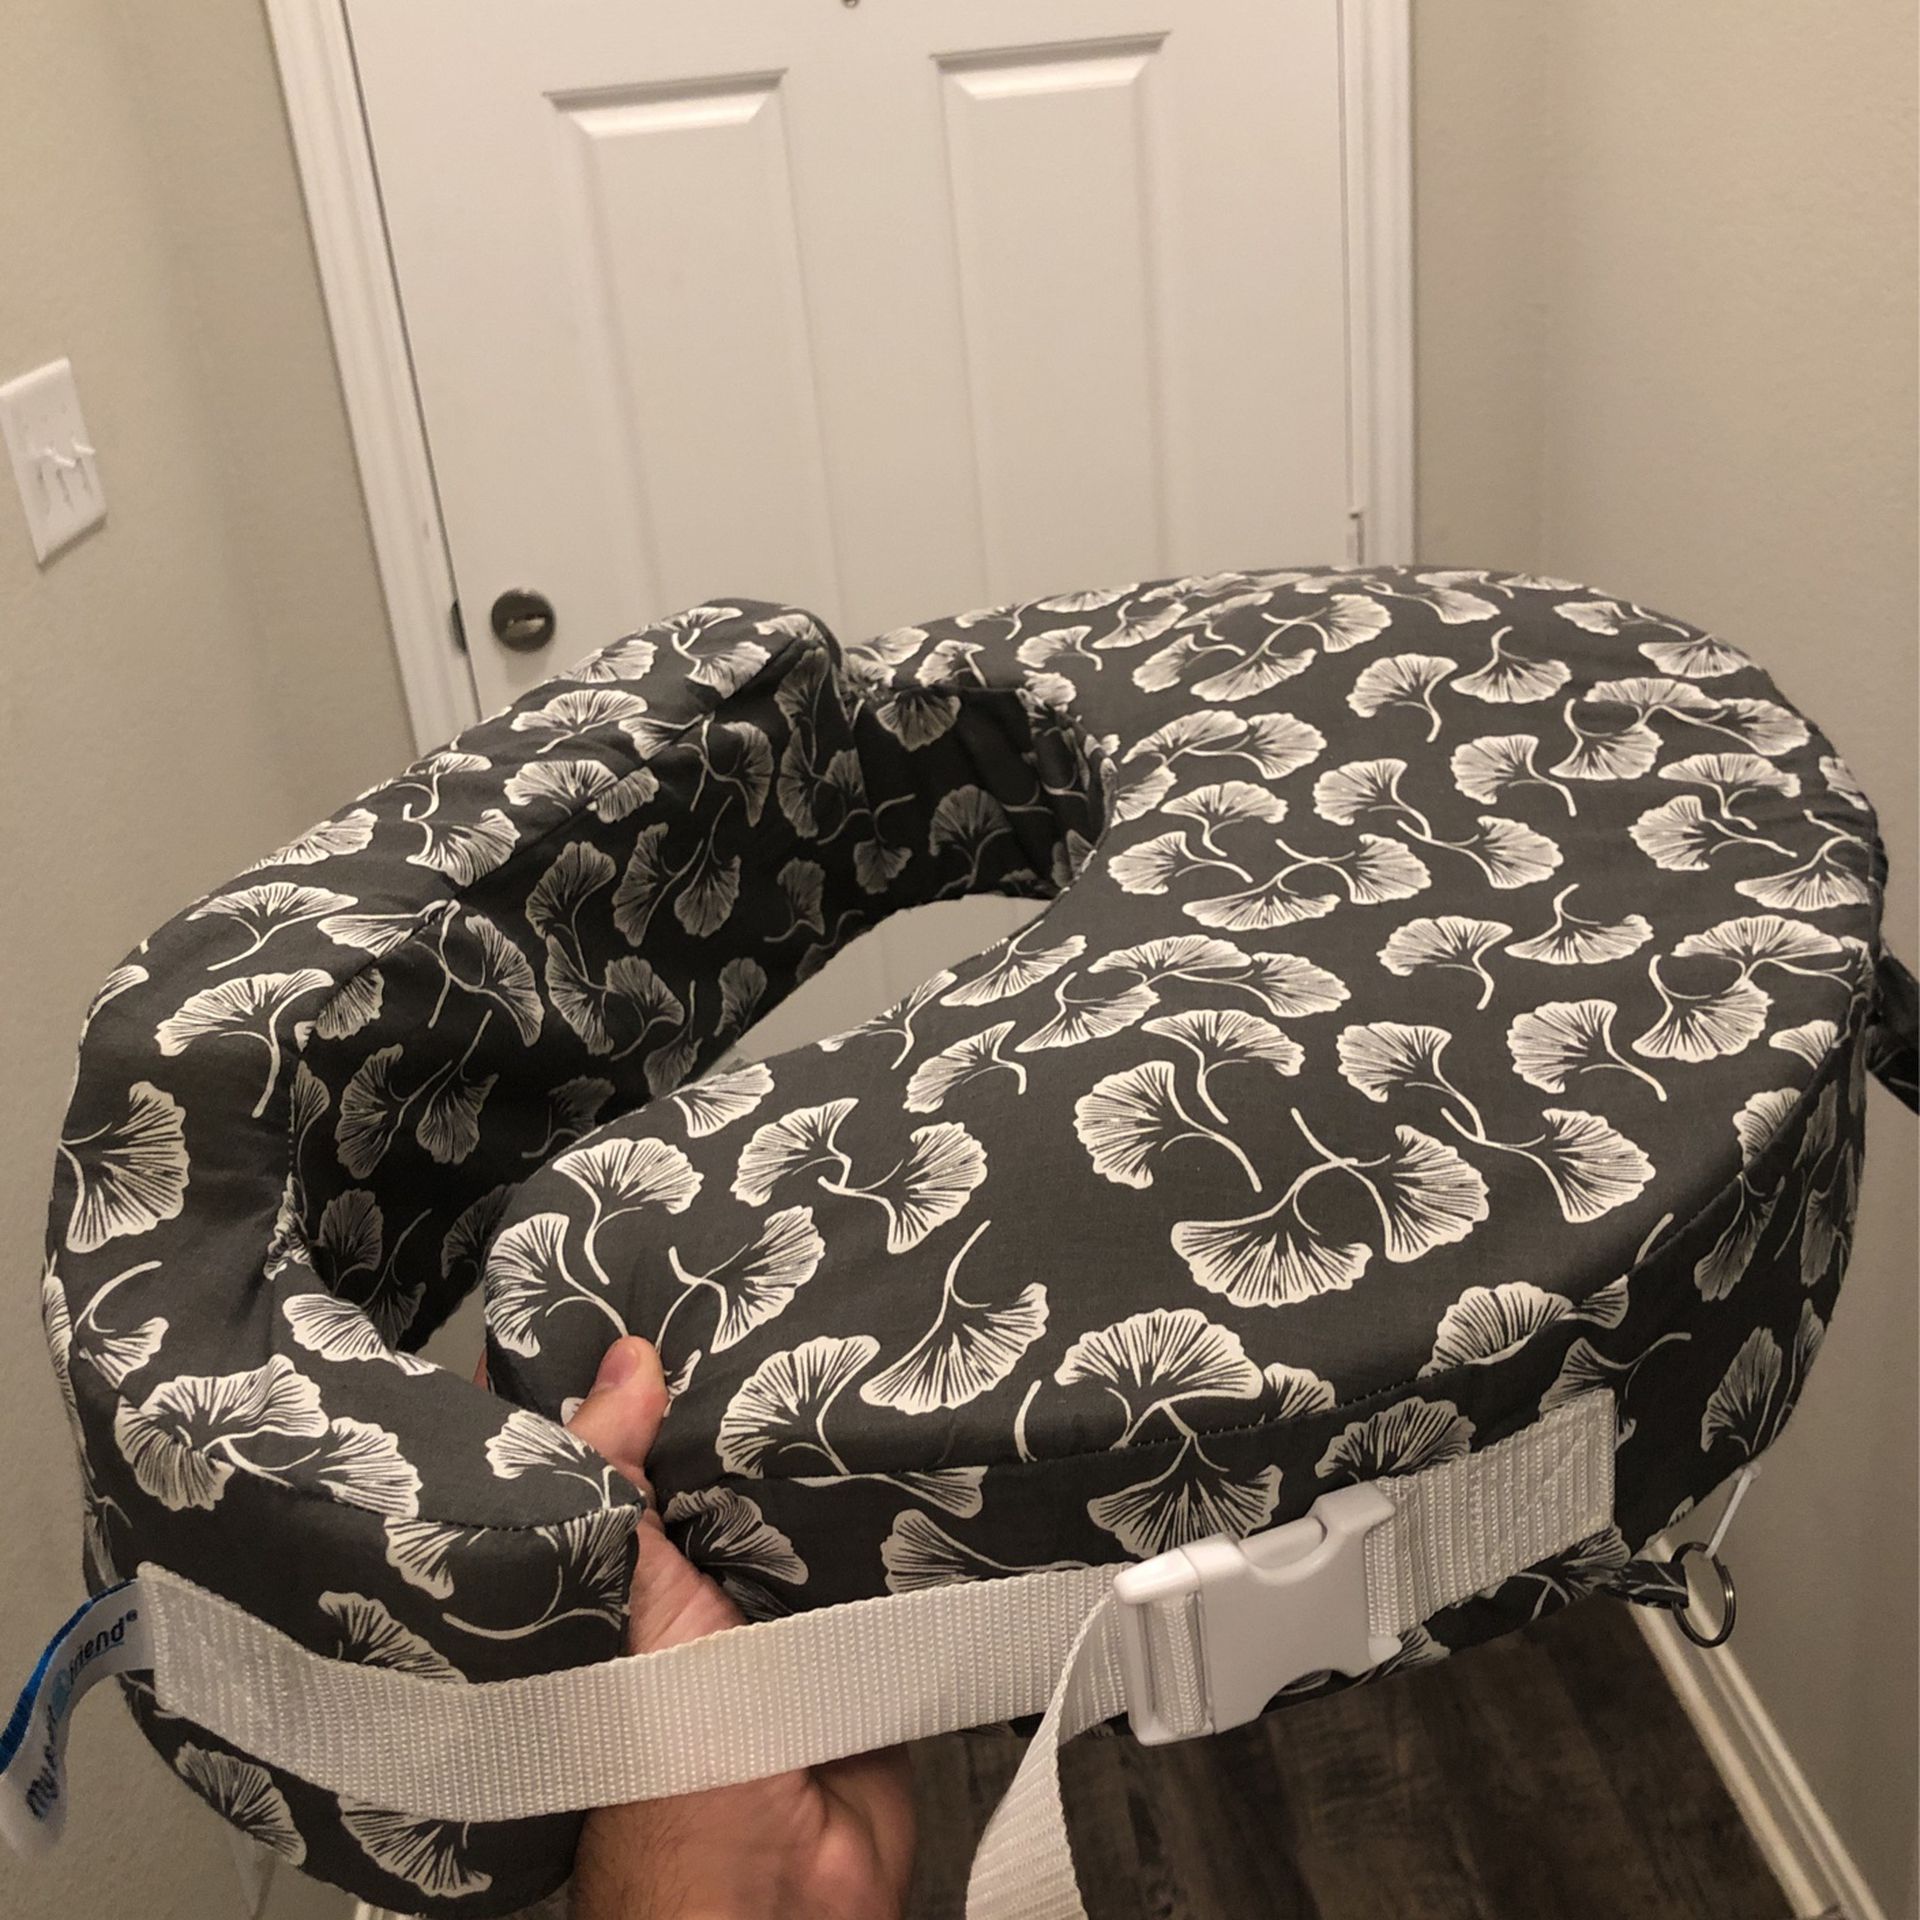 Boppy Pillow For Breastfeeding 